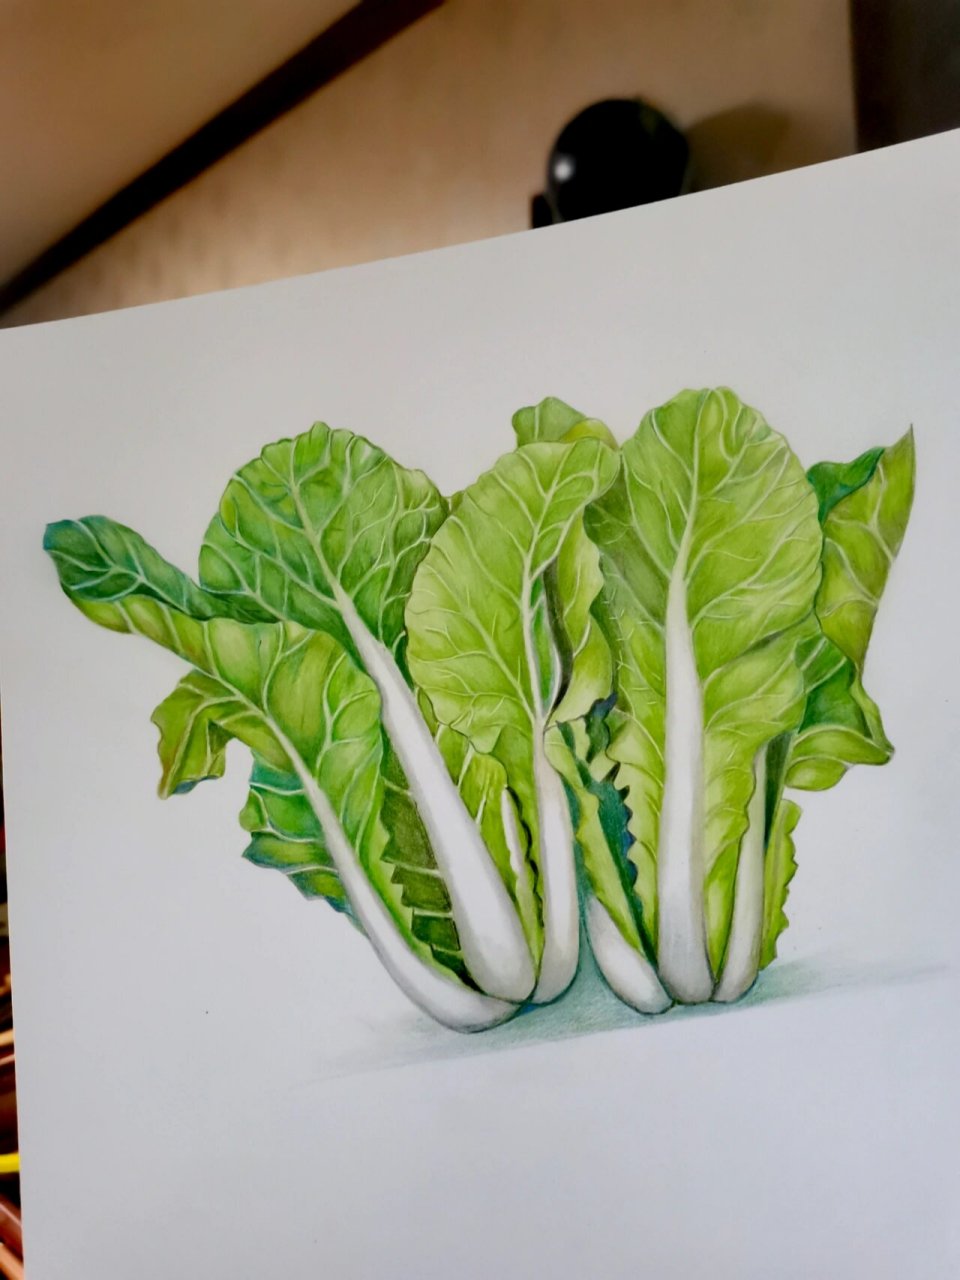 彩铅原创手绘:小白菜,绿色控的爱 这幅画素材来源多多买菜的蔬菜